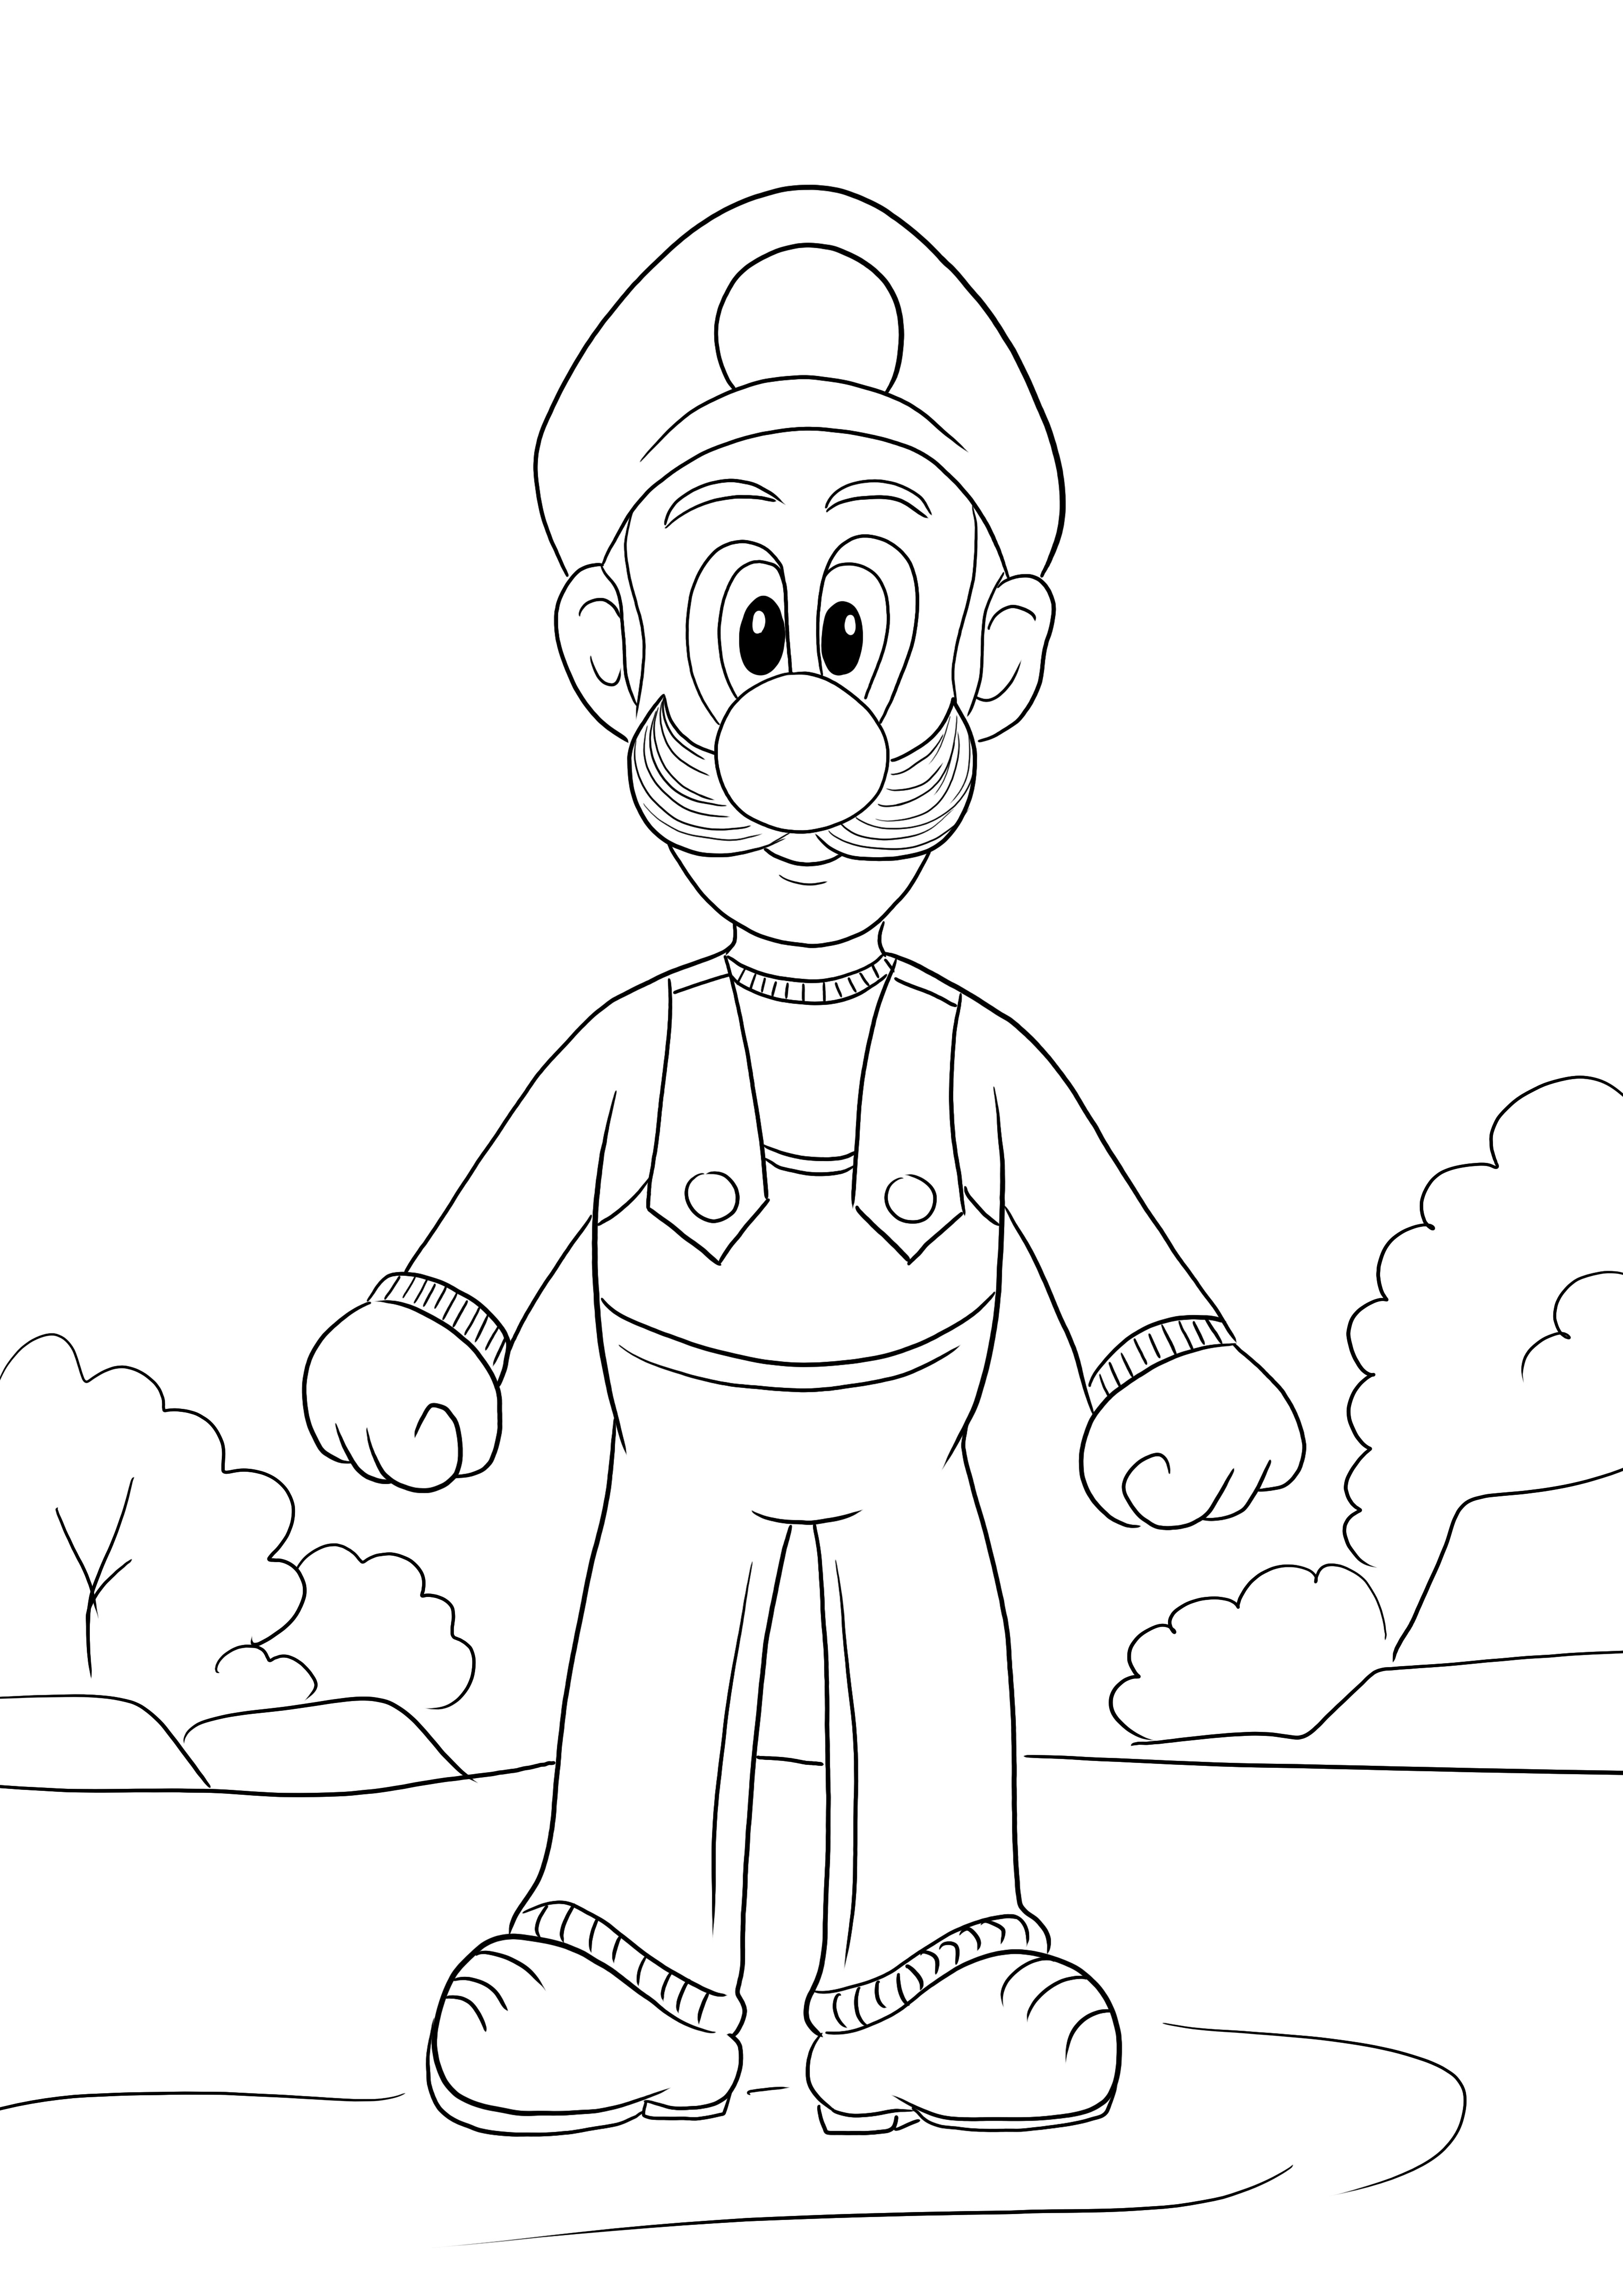 Aqui está uma imagem para colorir gratuita de Luigi do jogo Super Mario para baixar ou imprimir gratuitamente